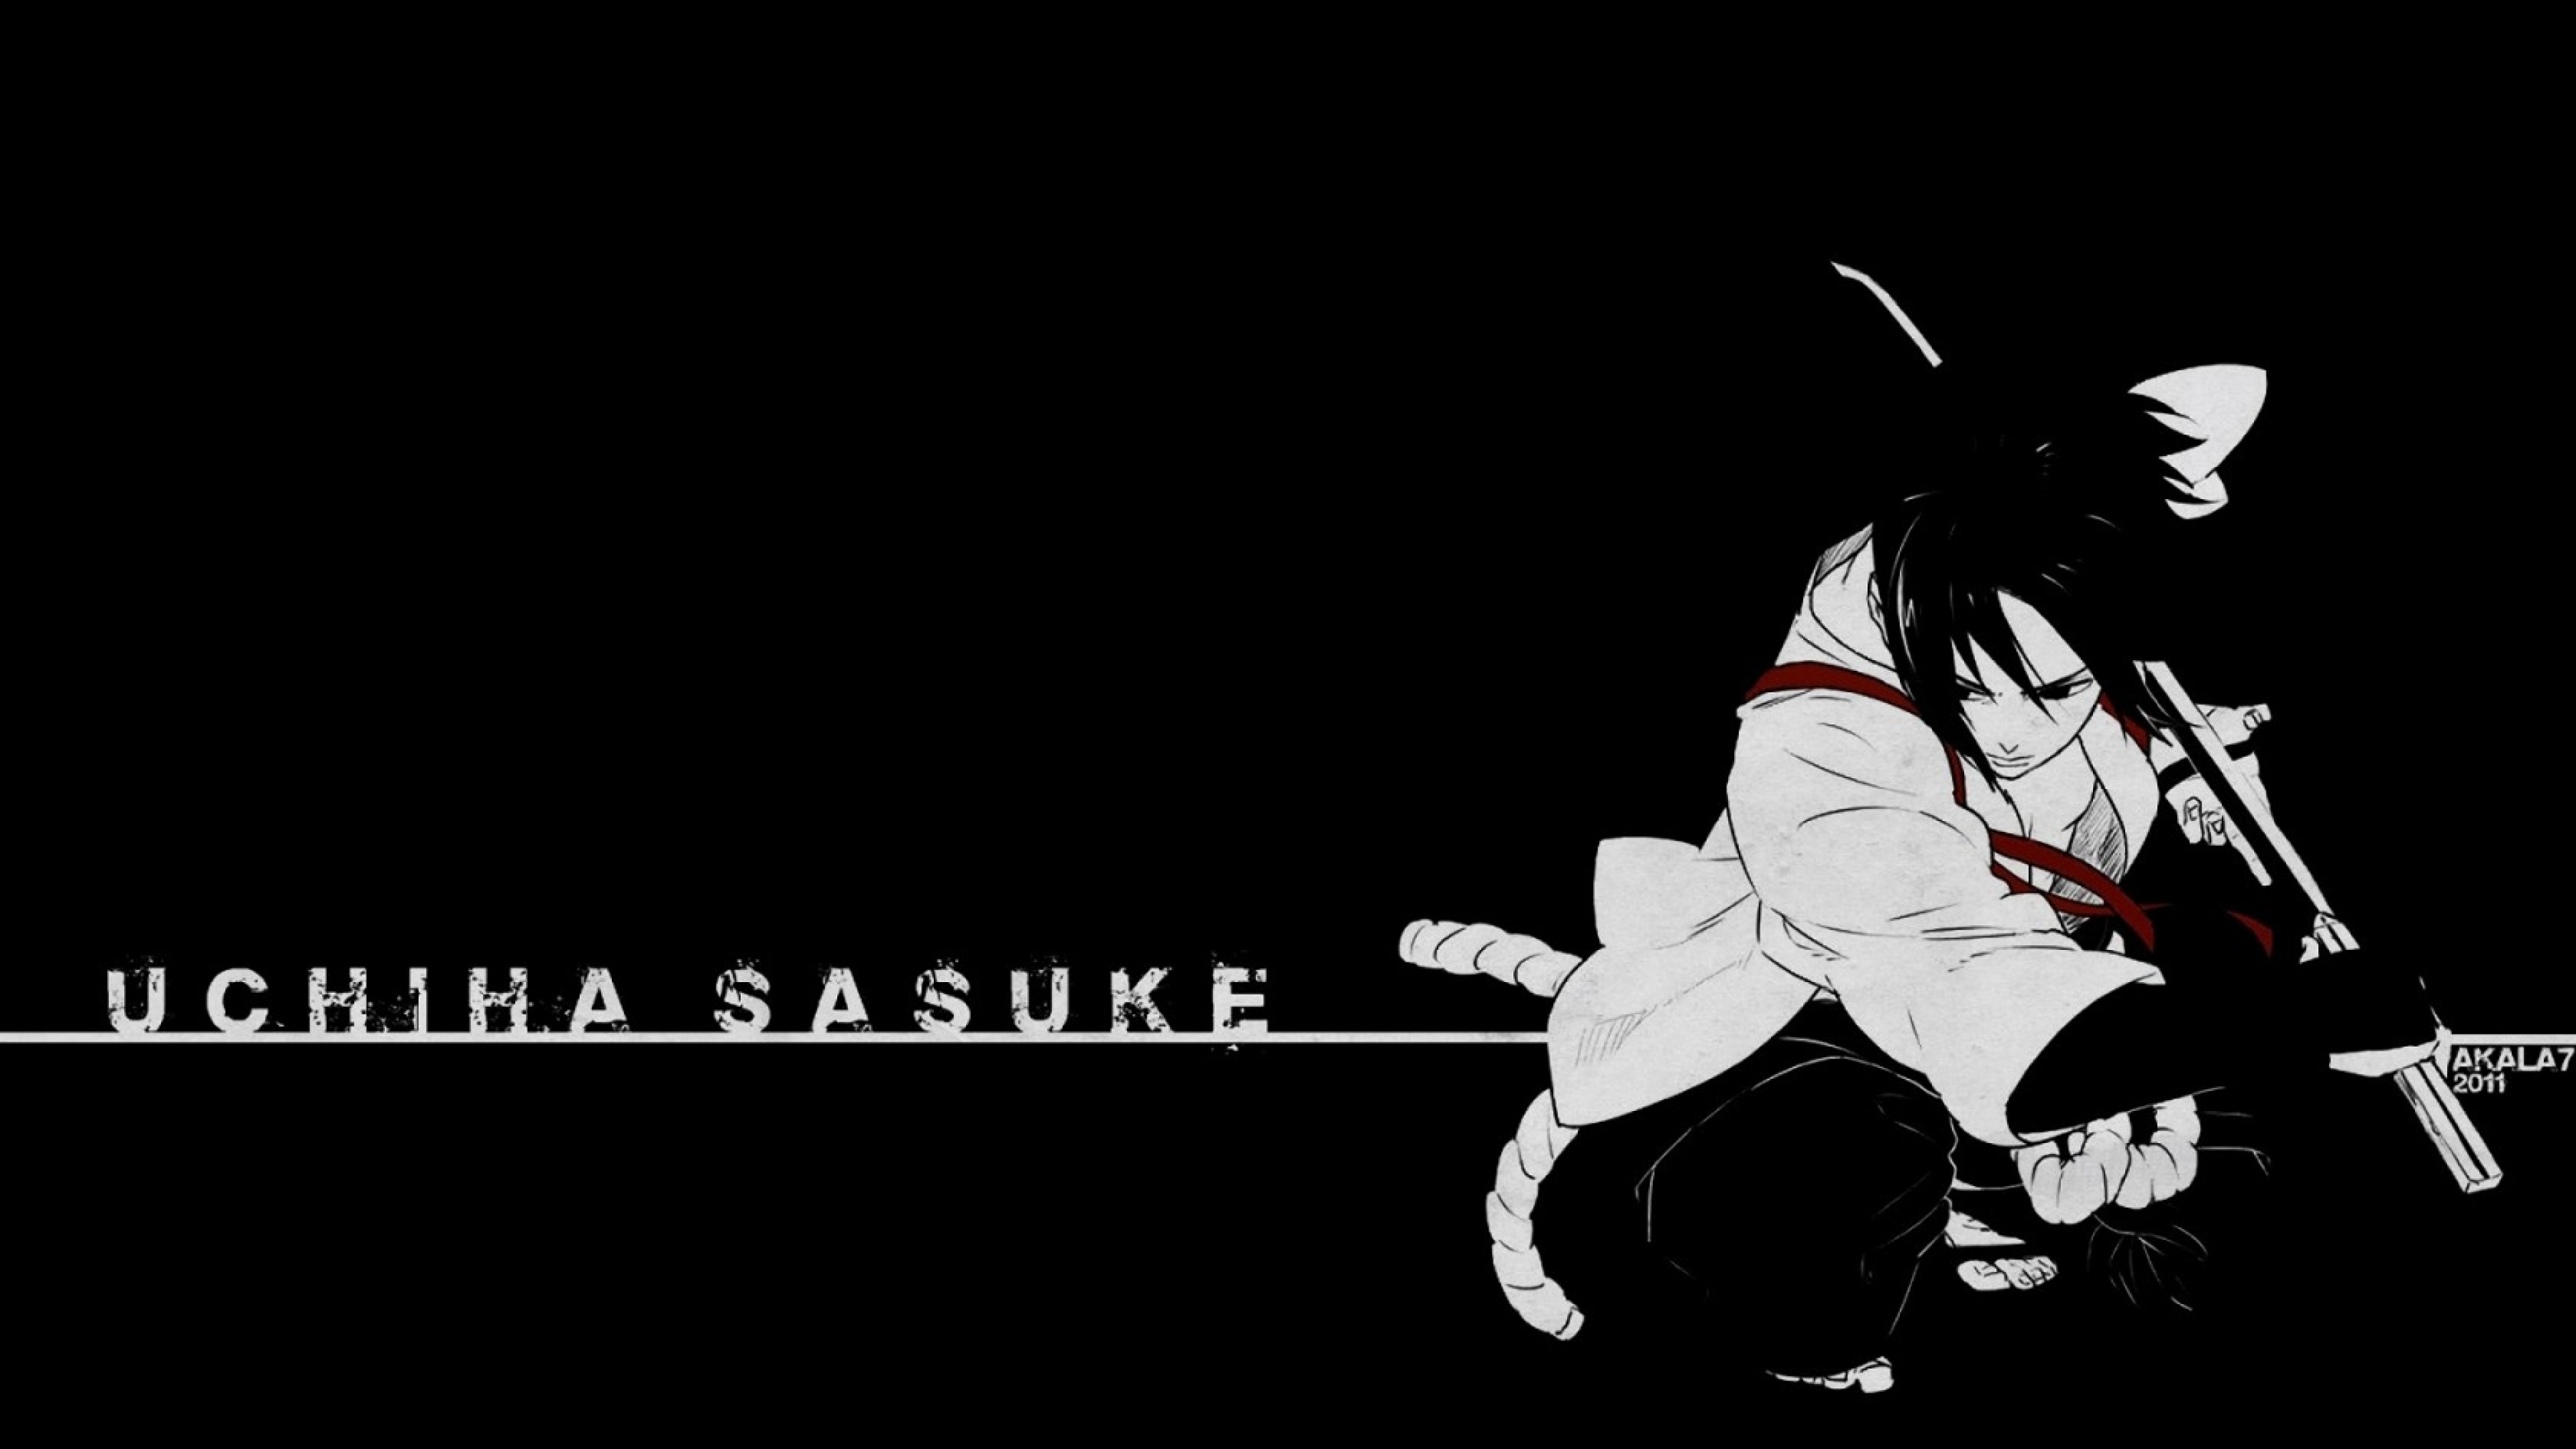  Uchiha  Sasuke  Naruto Art Full HD Wallpaper 